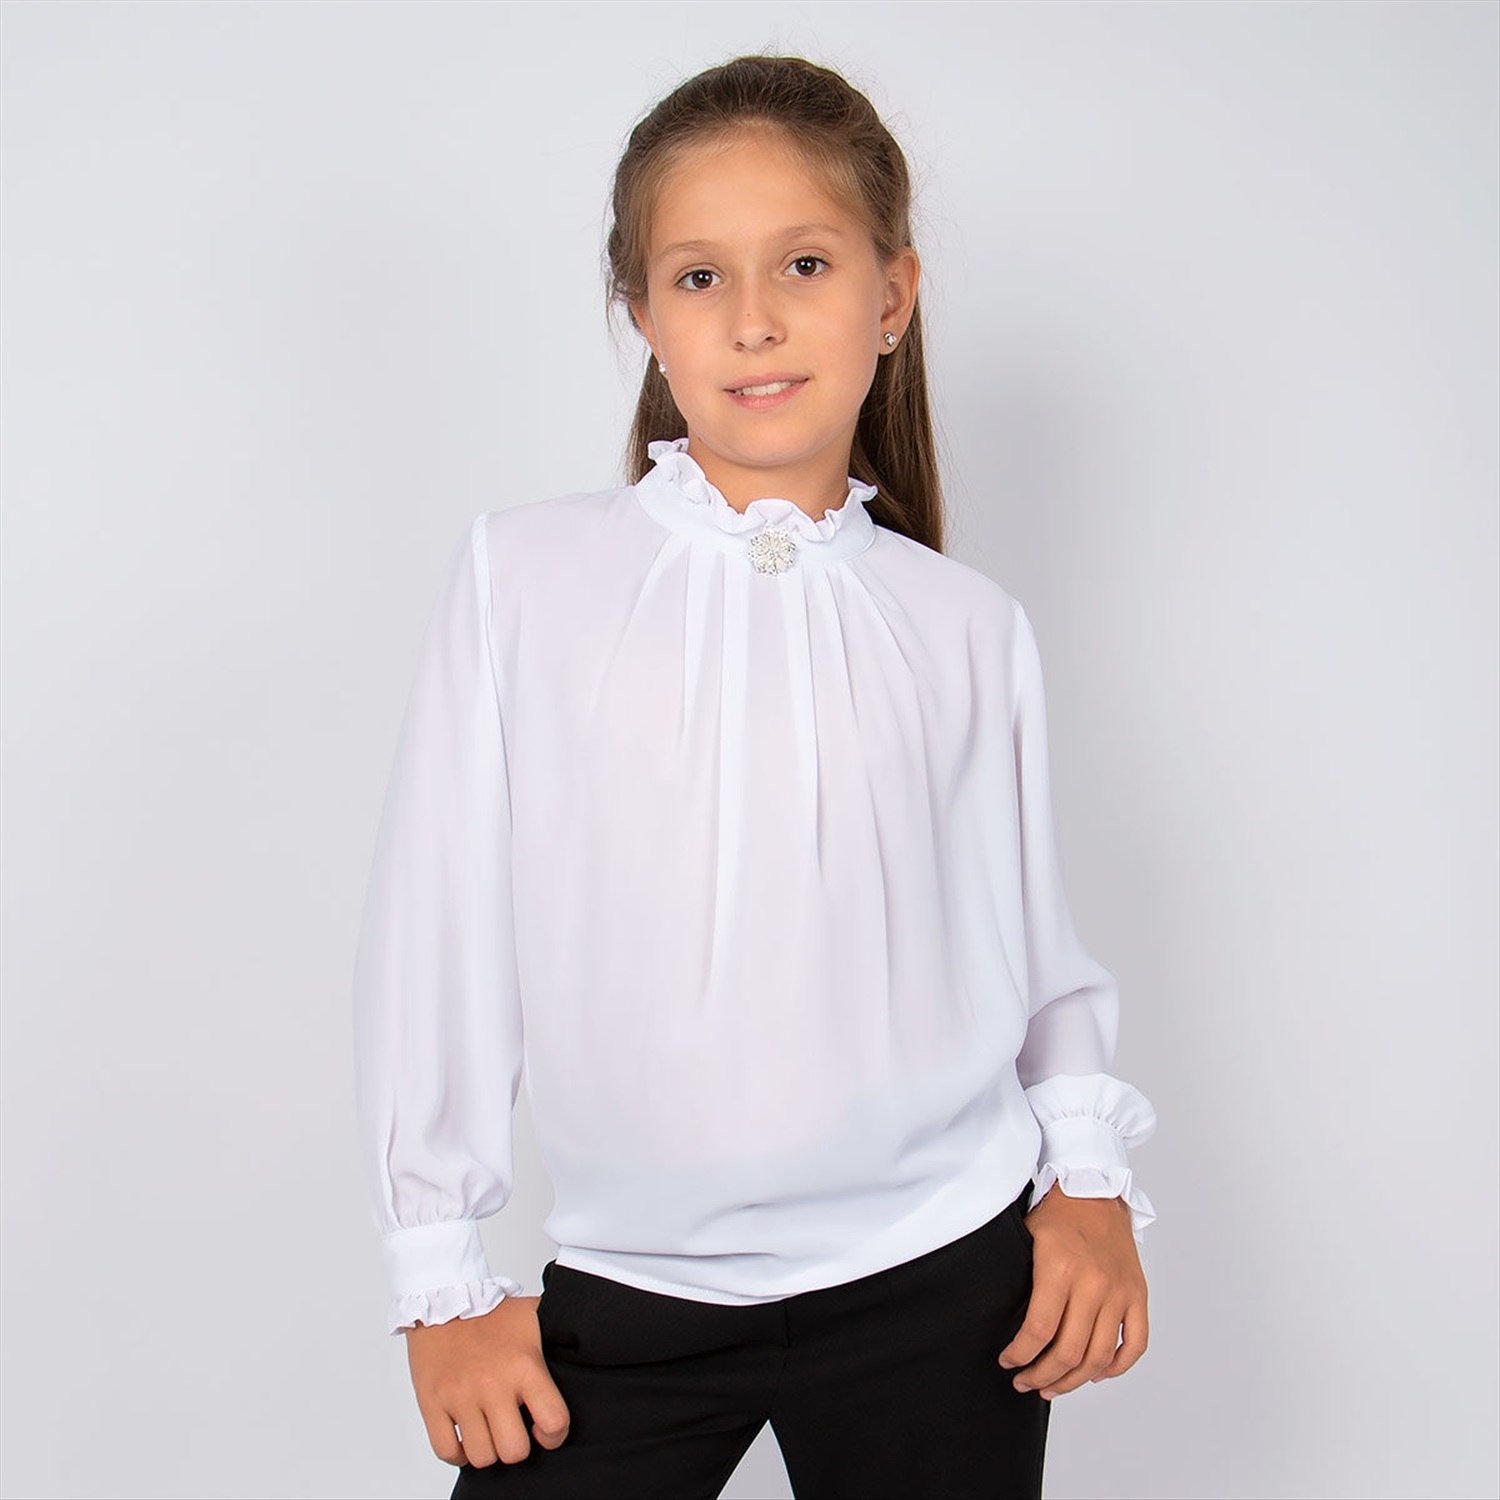 Блузки детям. Блузка Futurino School белая. Белая блузка для девочки. Блузка Школьная для девочек. Блузка белая Школьная для девочки.